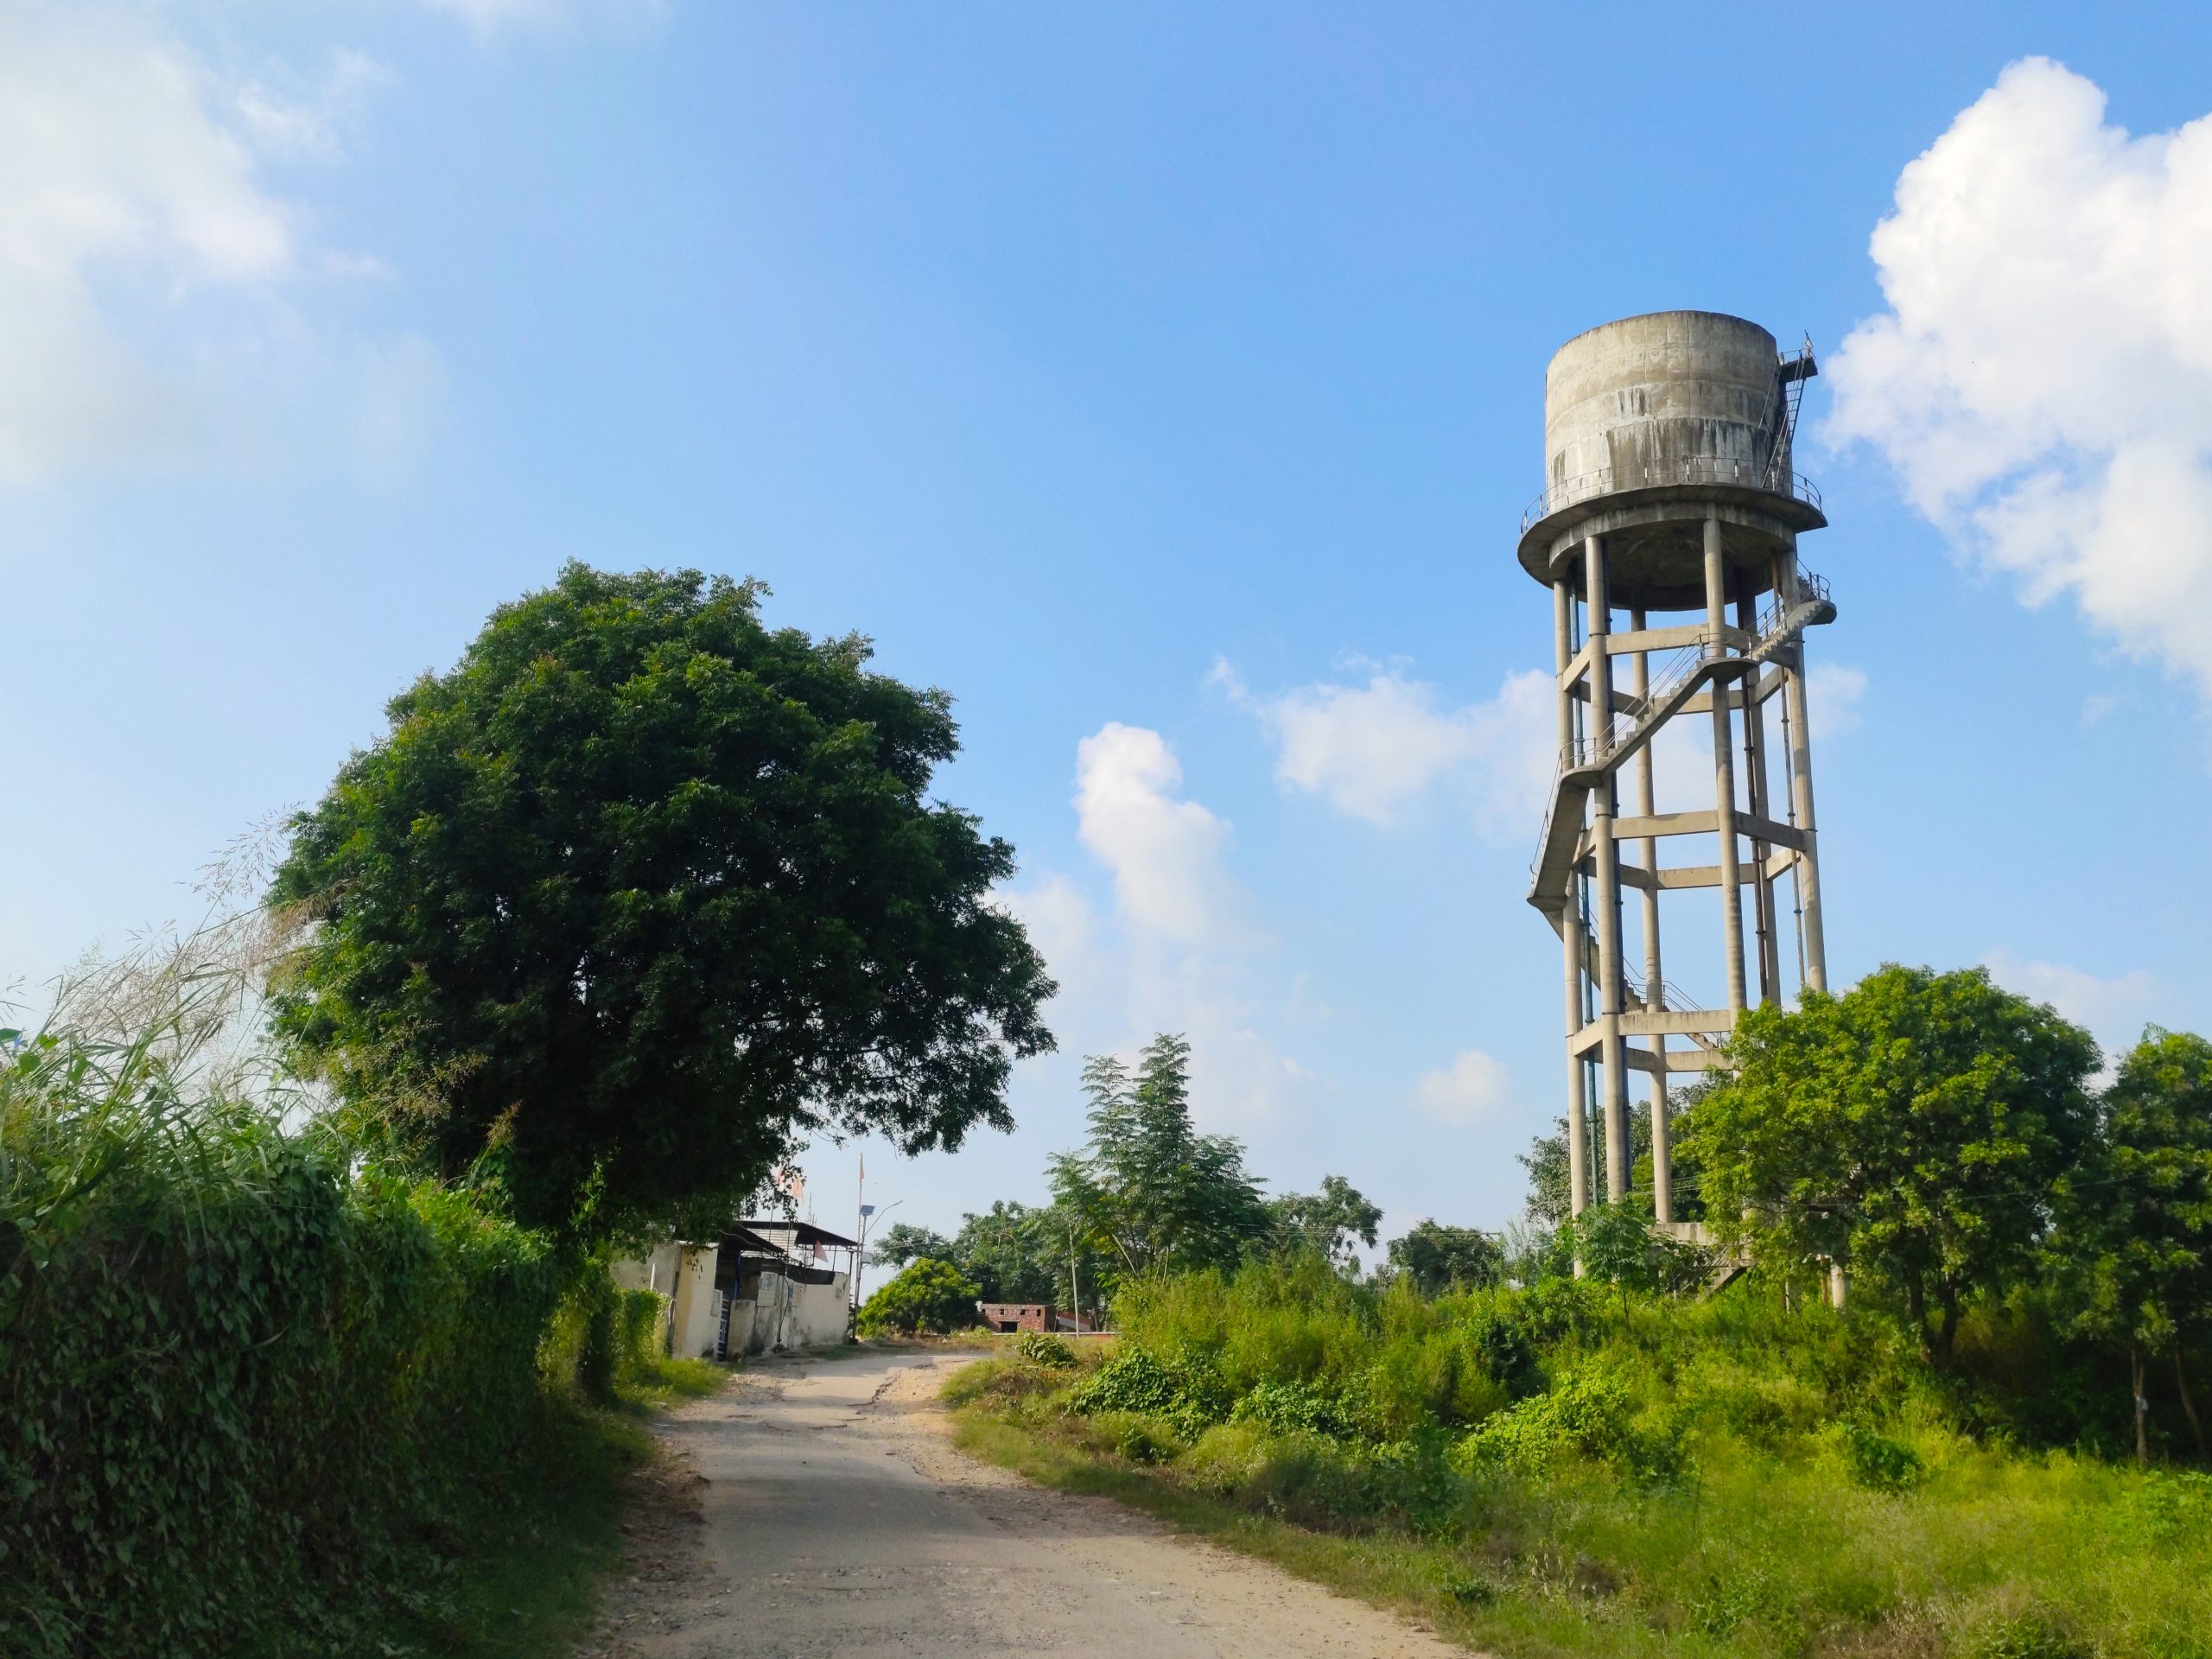 Huge water tank in a village